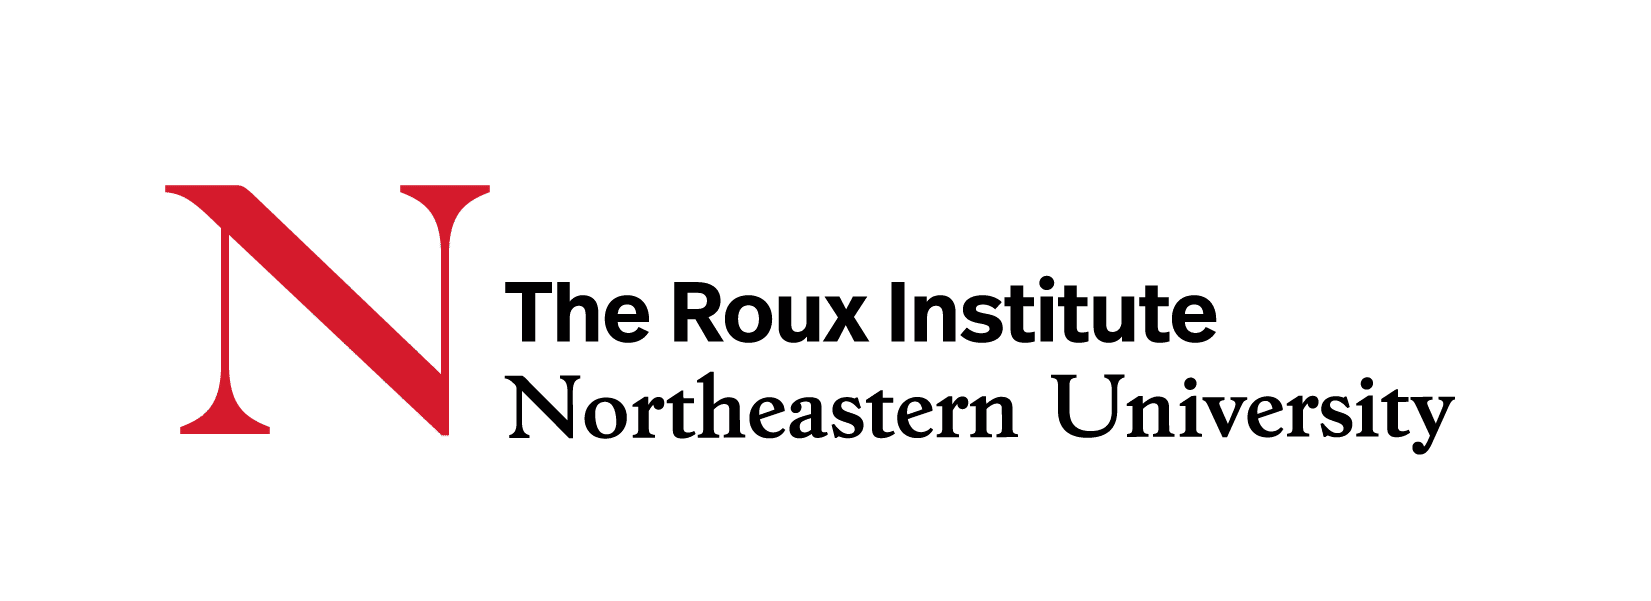 The Roux Institute